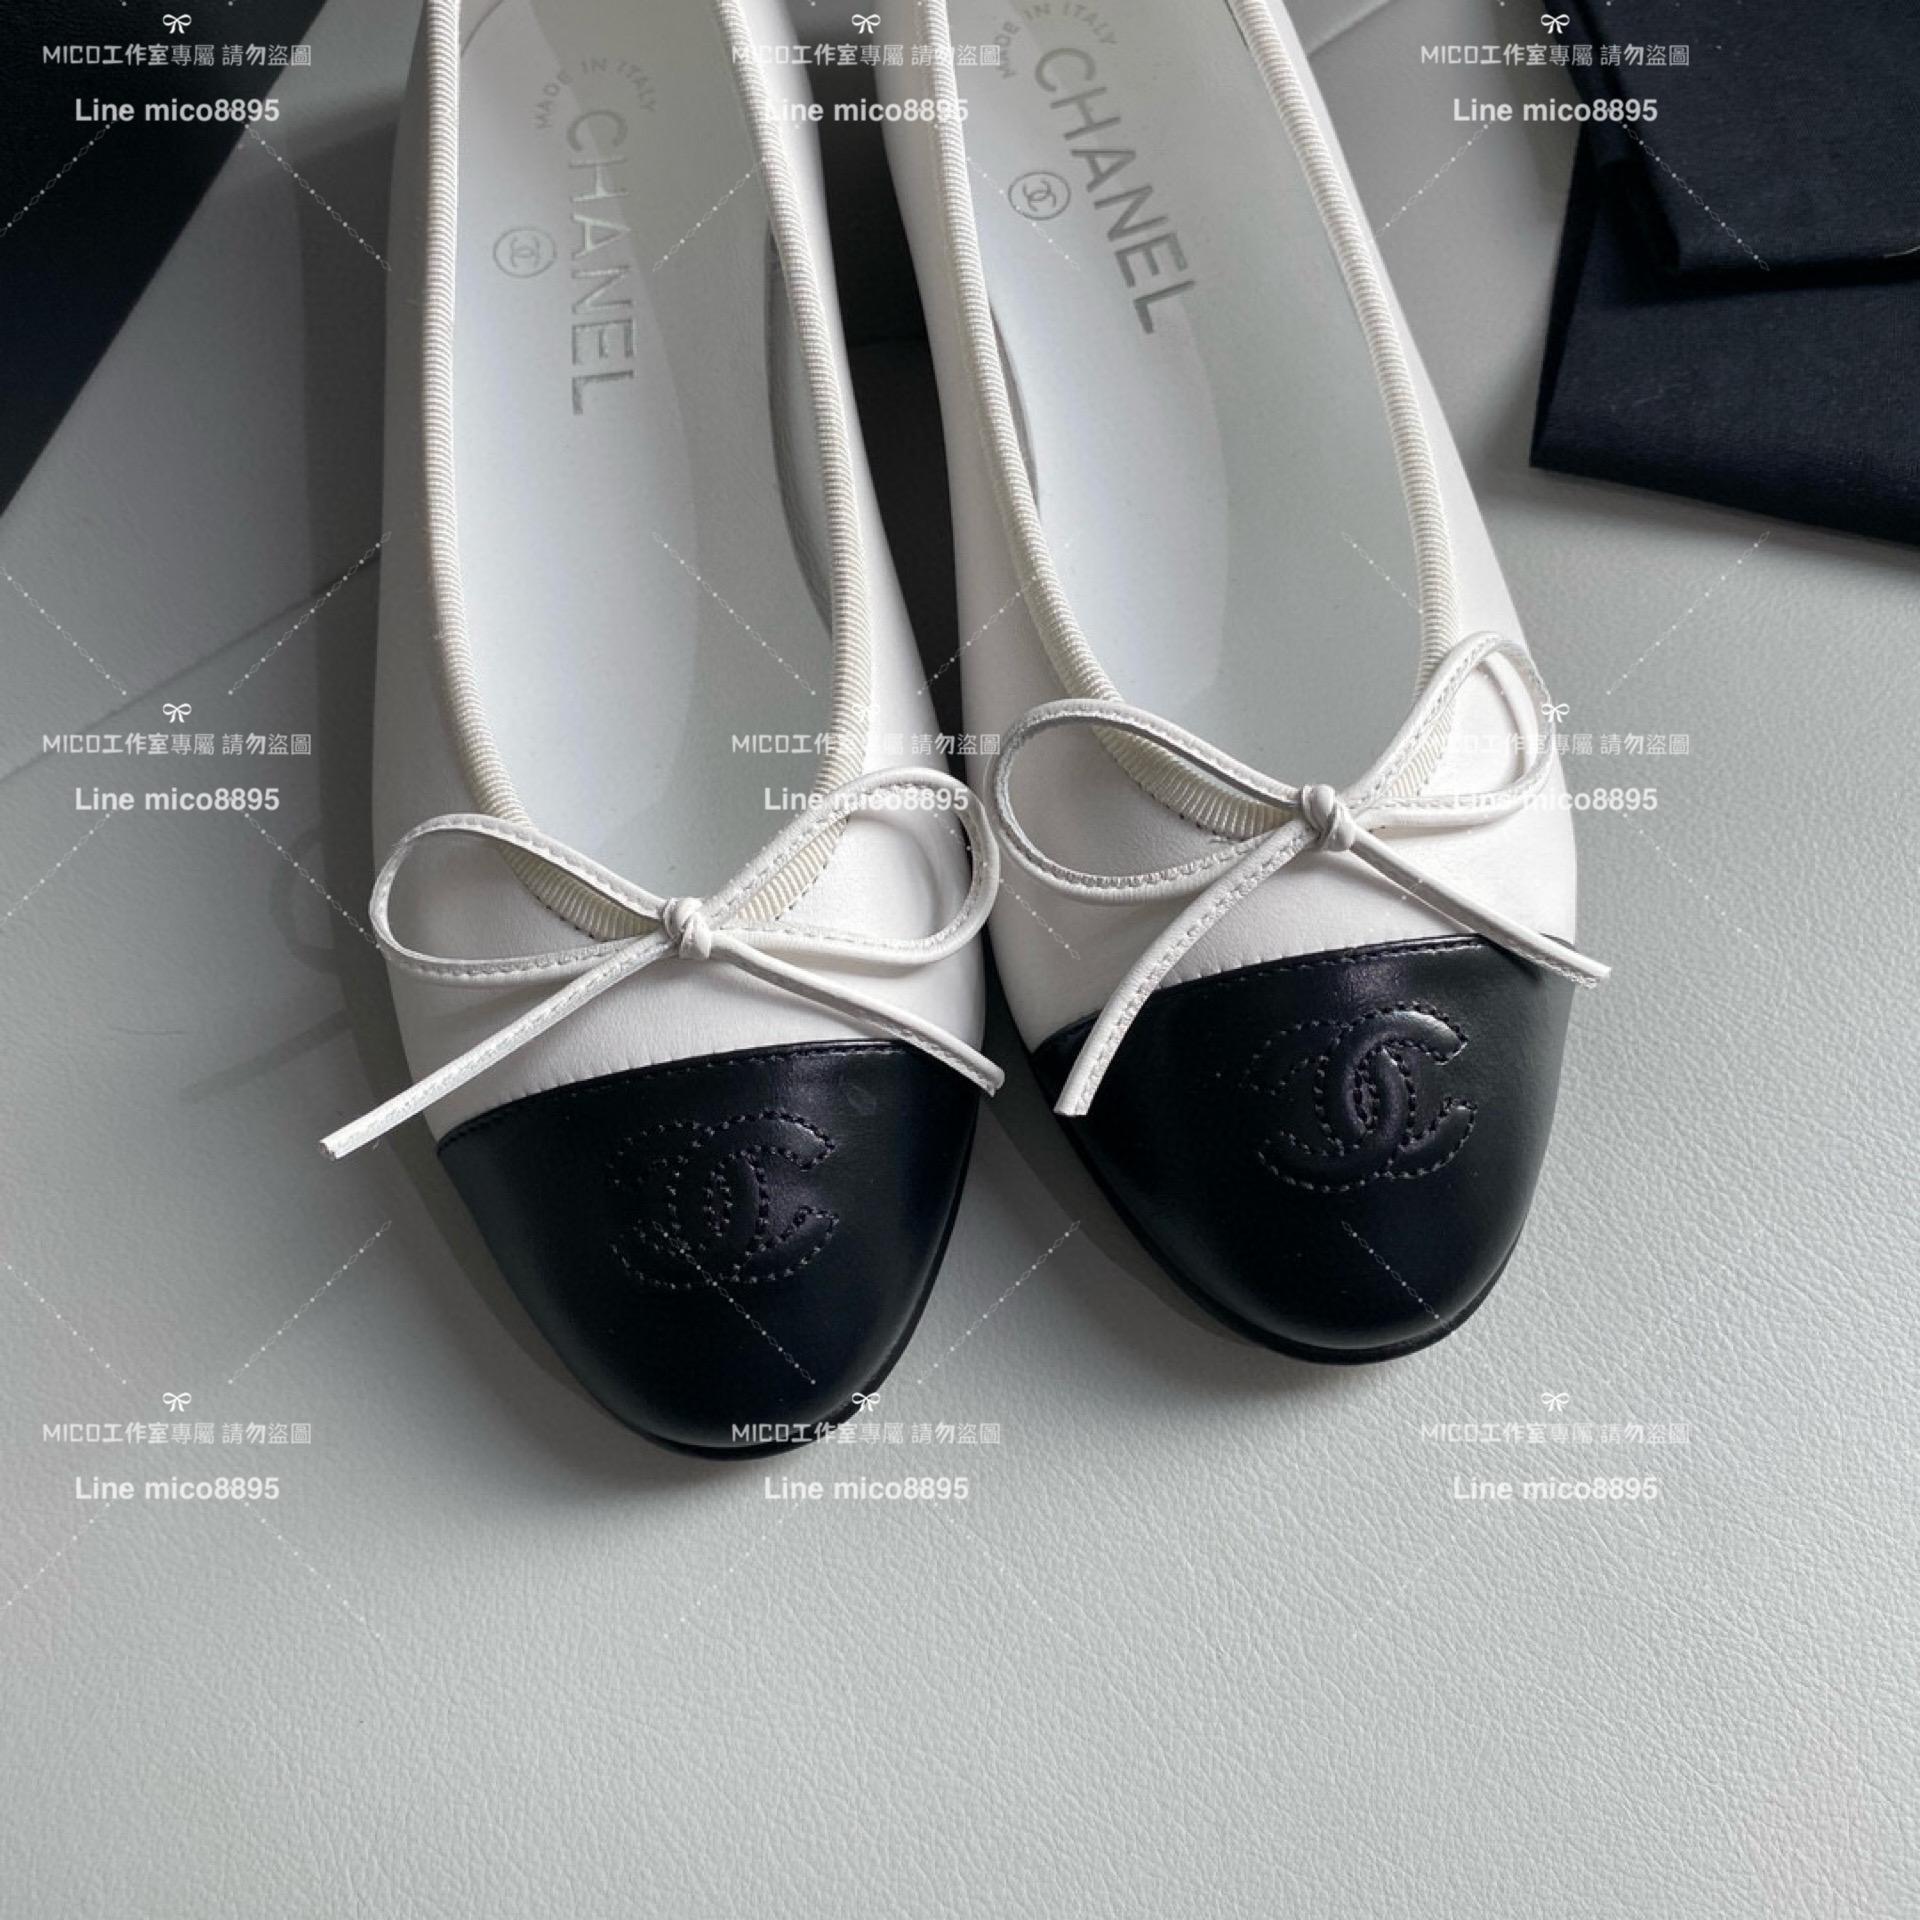 CHANEL 小香 經典款芭蕾舞鞋 白色羊皮 平底鞋/女鞋 Size：35-39（34.40.41.42定做不退换）